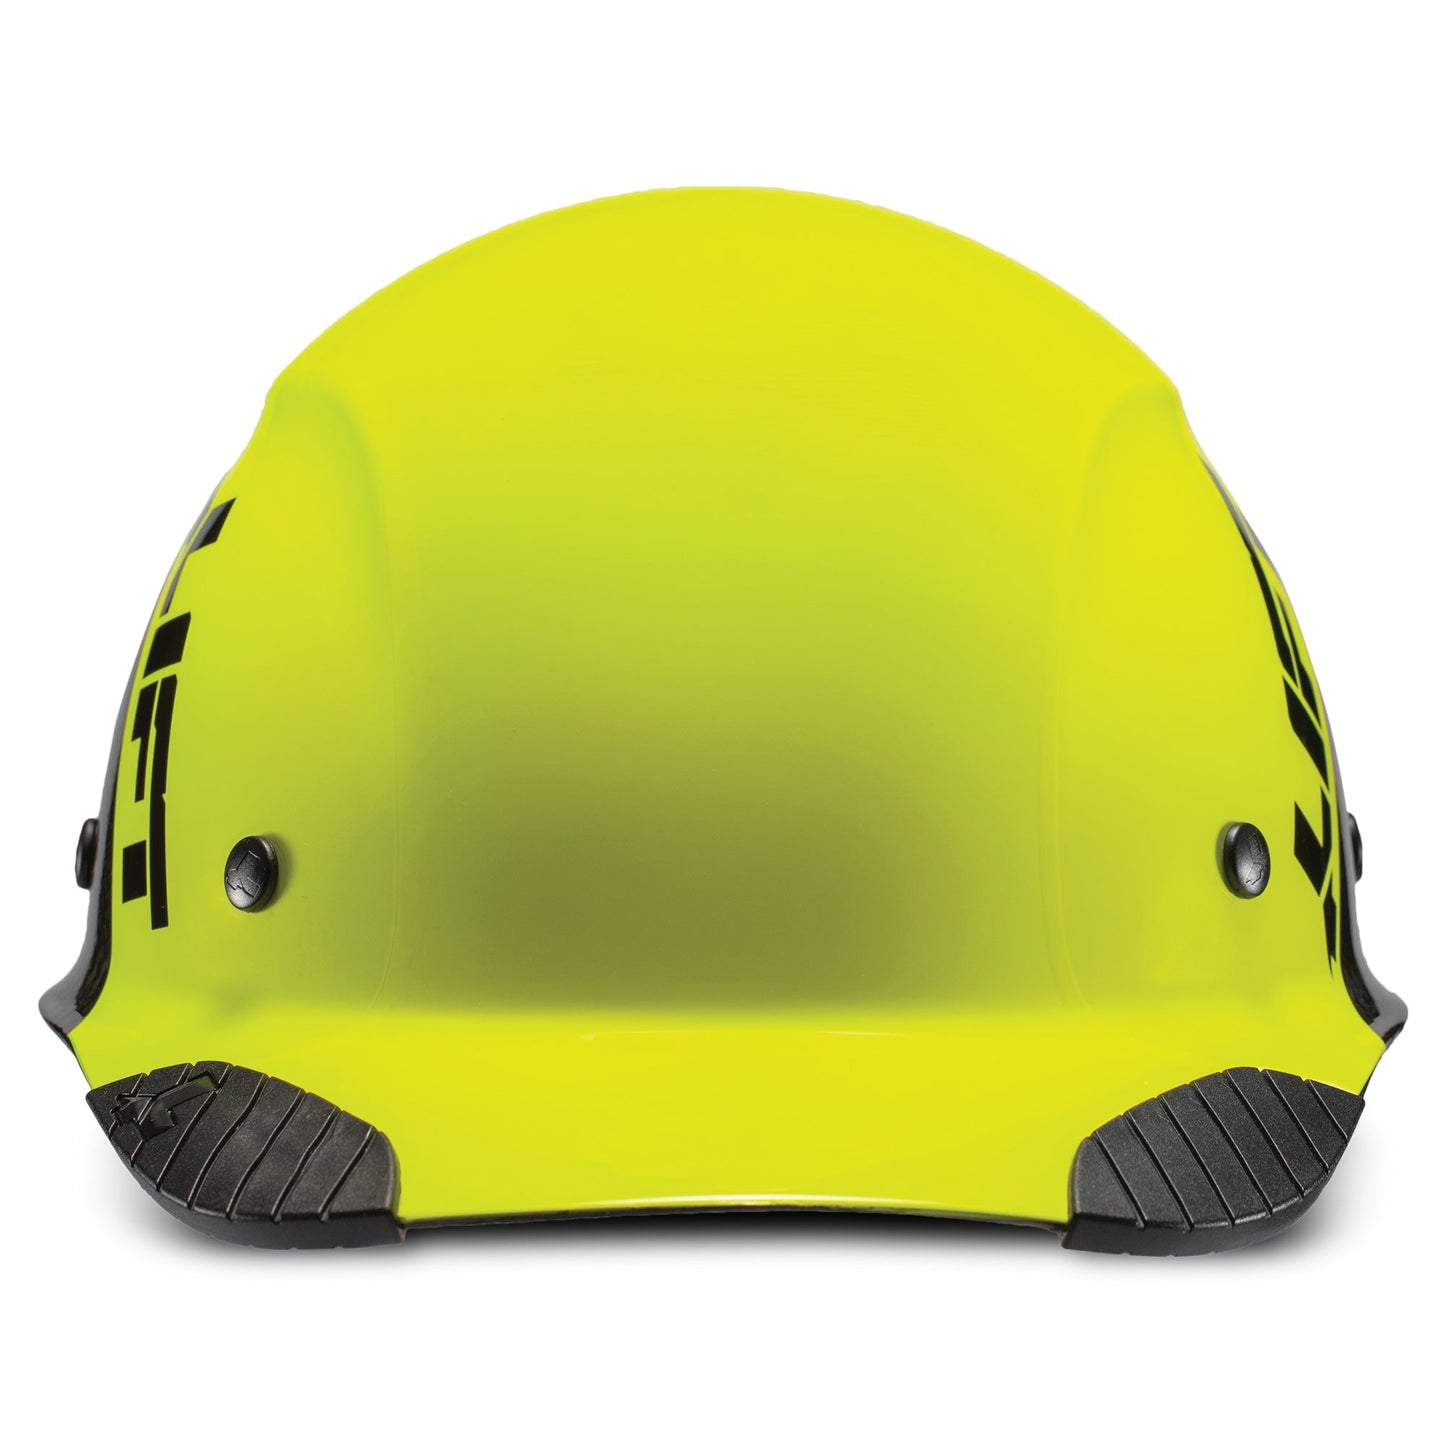 LIFT Safety - DAX Fifty 50 Carbon Fiber Cap